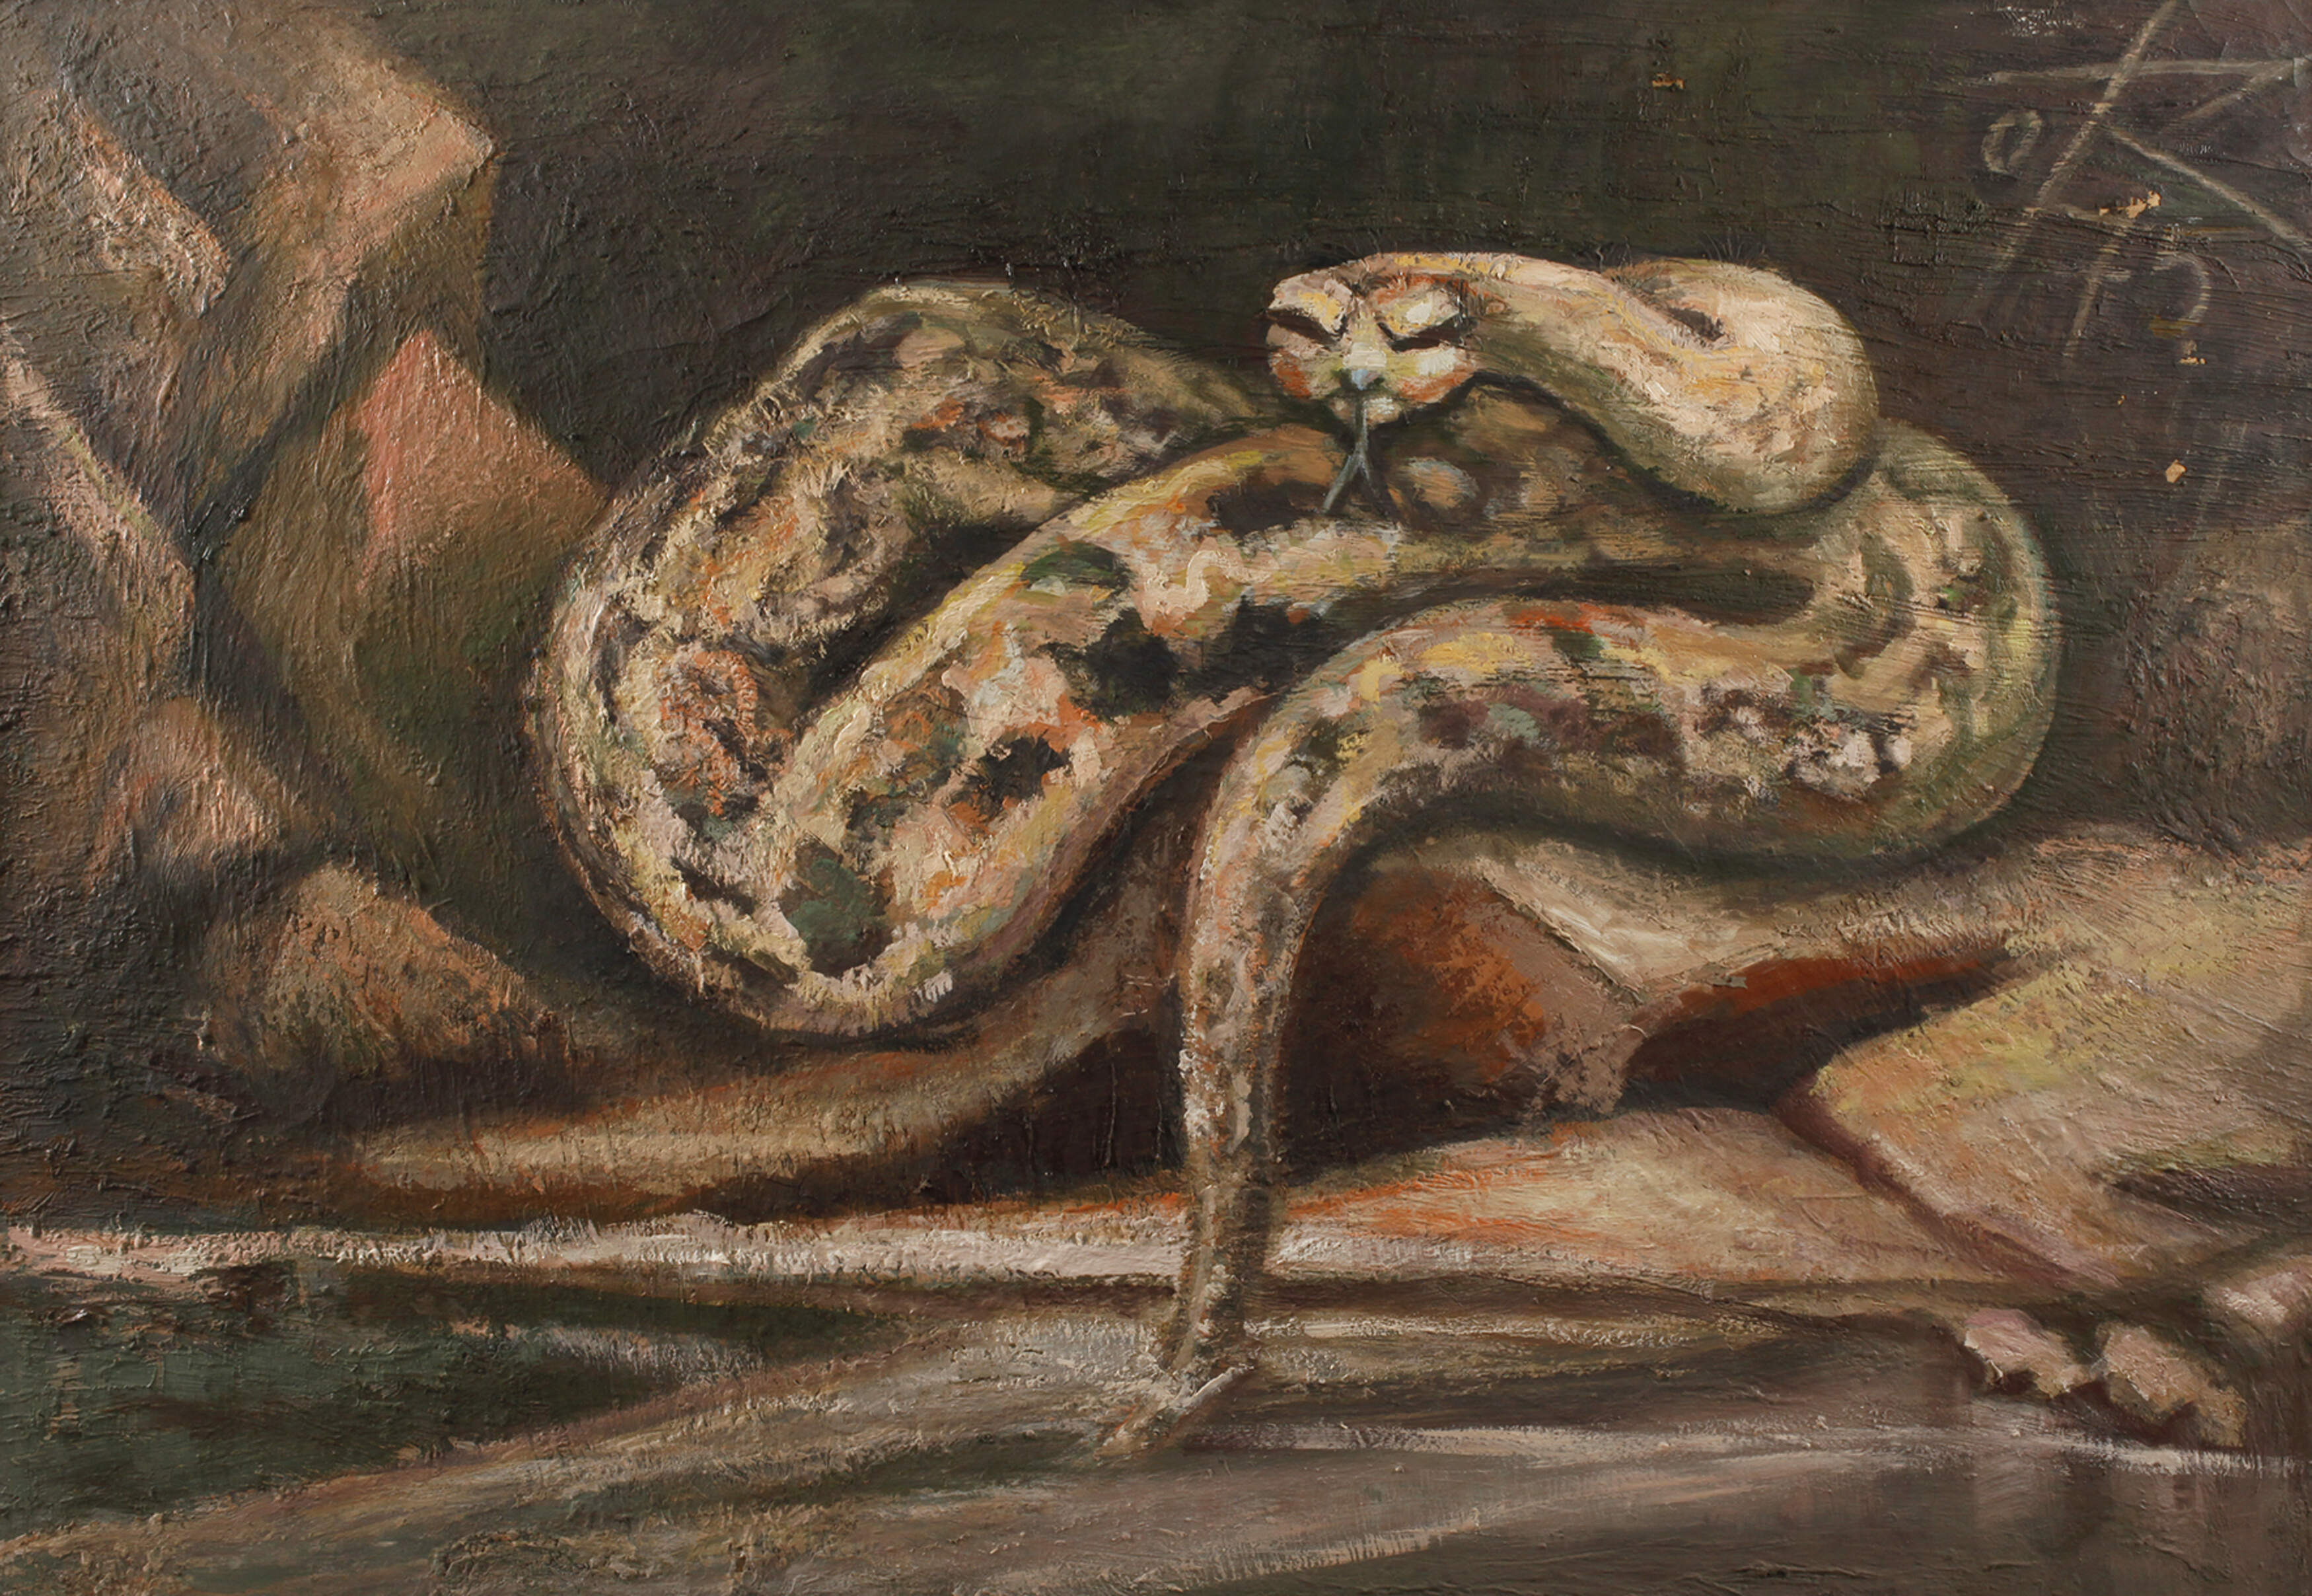 Otto Rudolf Schmidt, "Python"